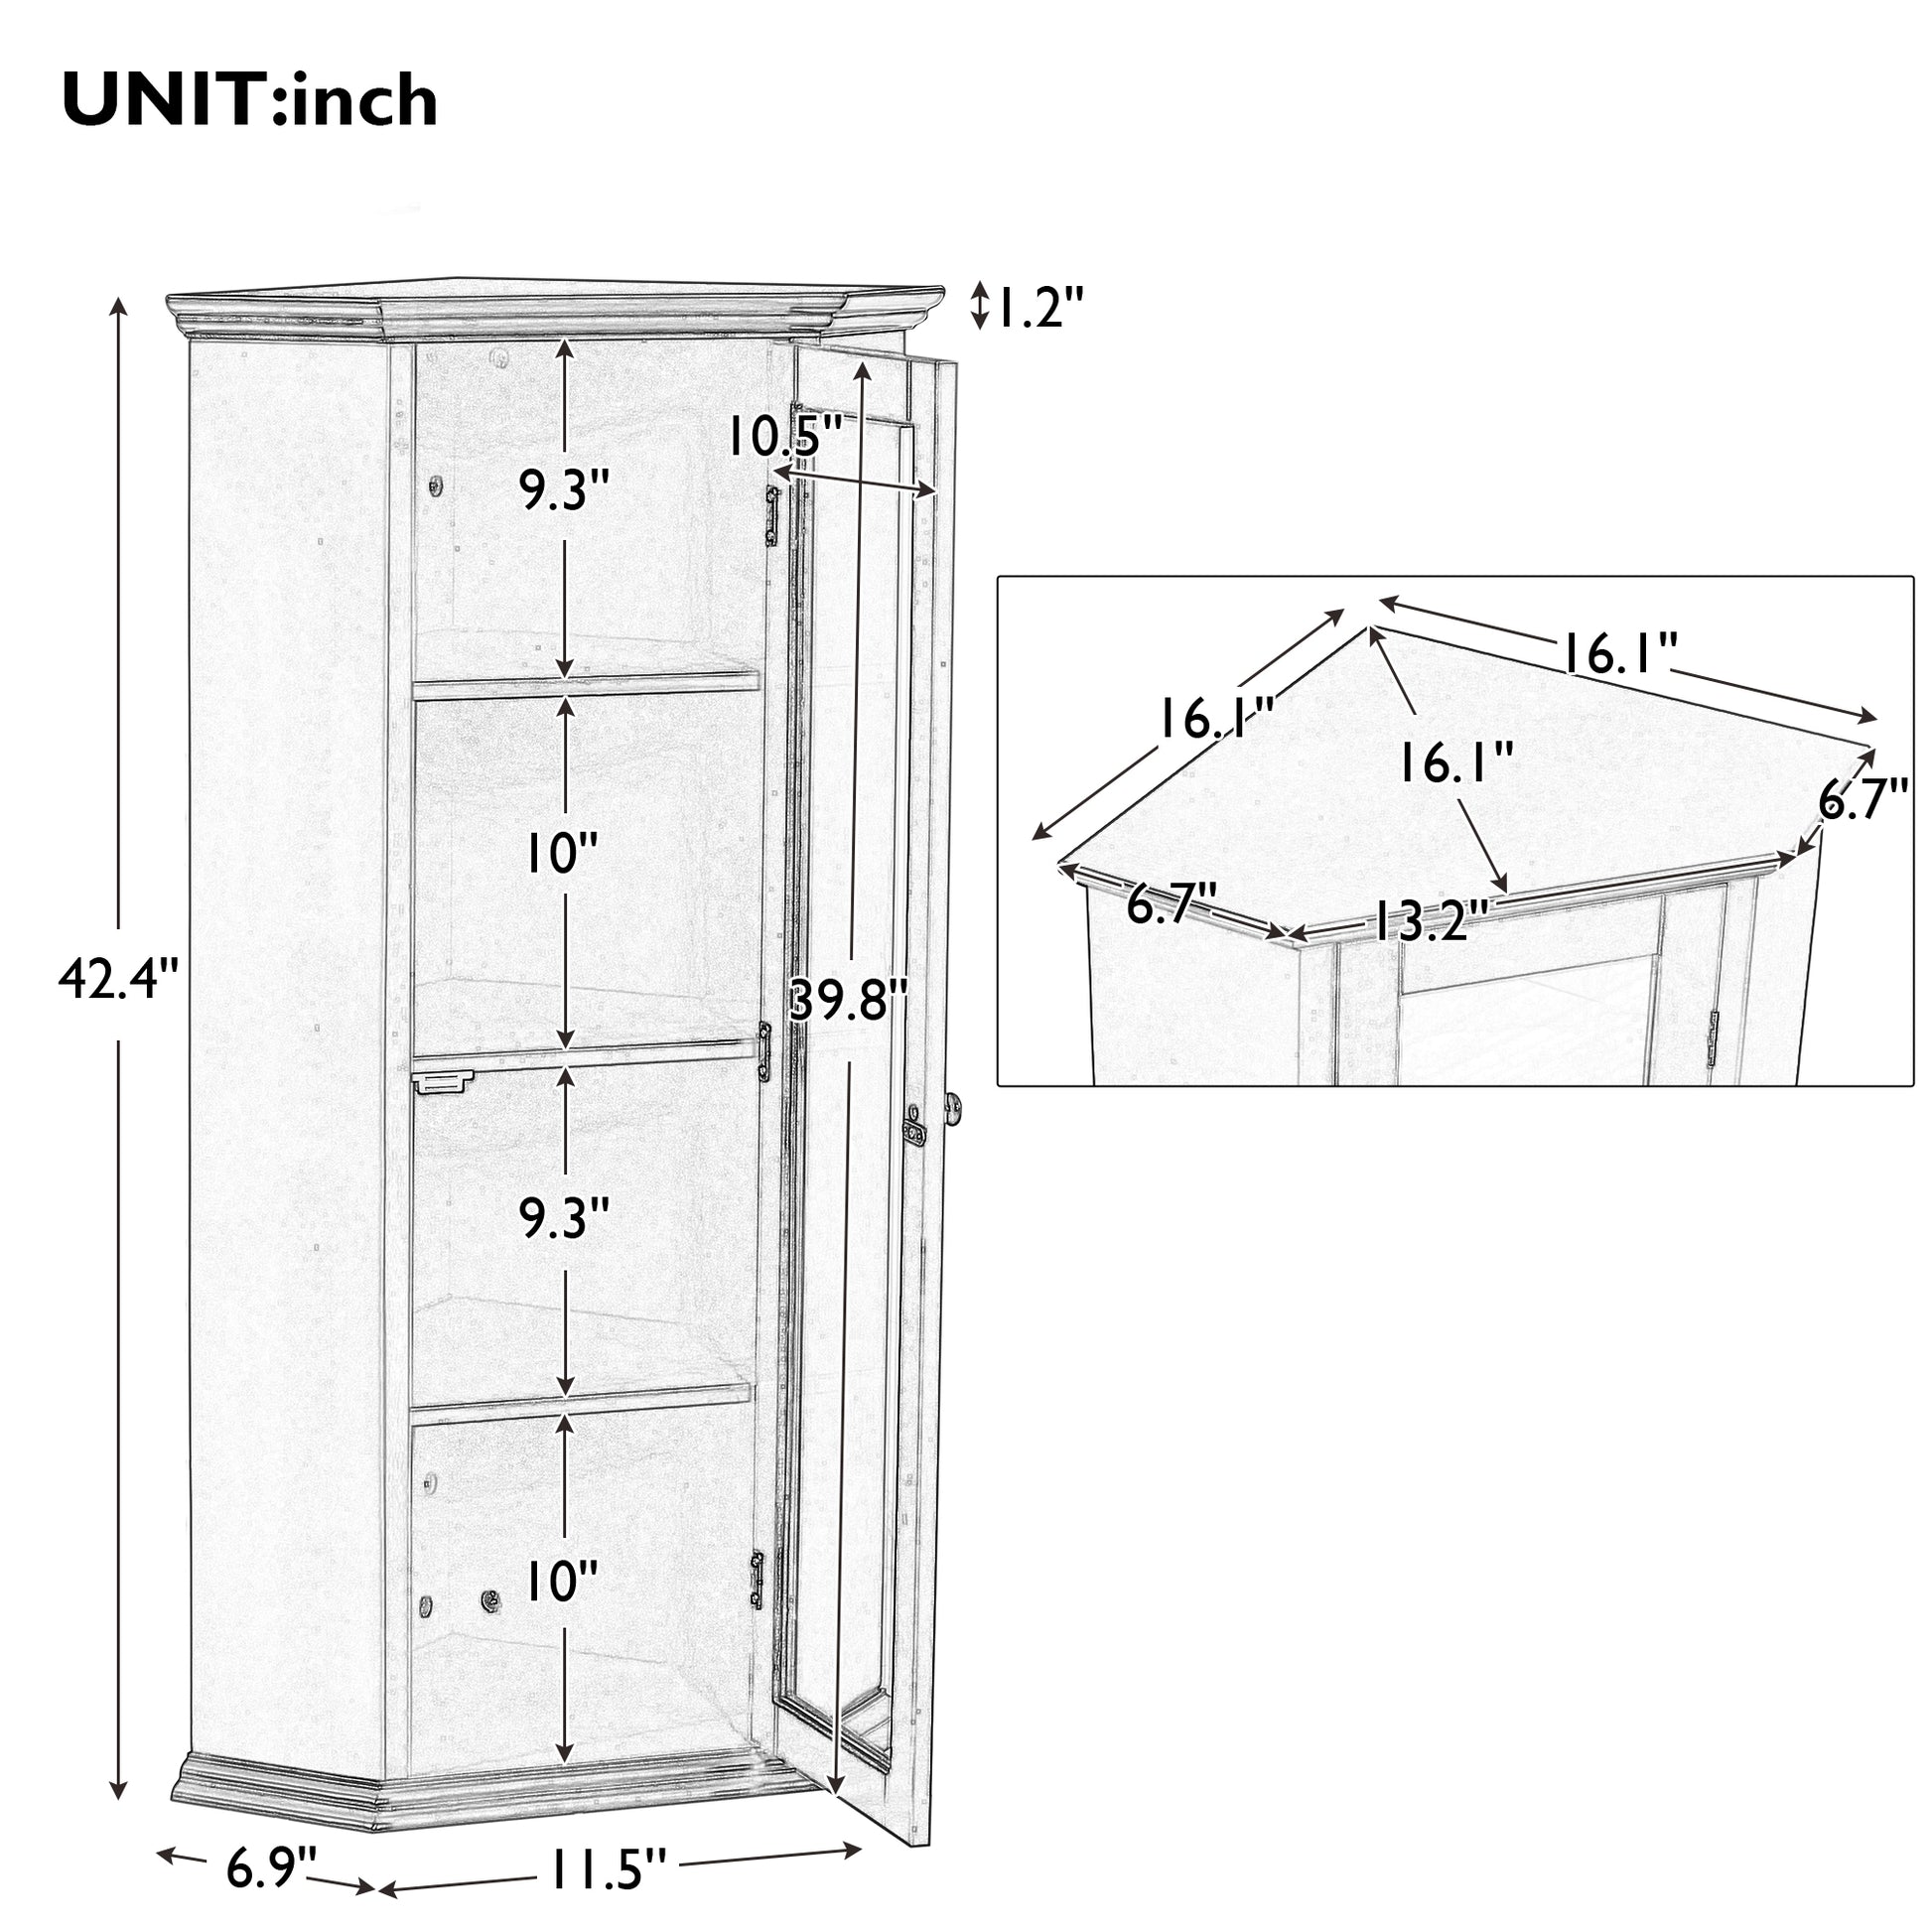 Freestanding Bathroom Cabinet with Glass Door, Corner brown-mdf+glass